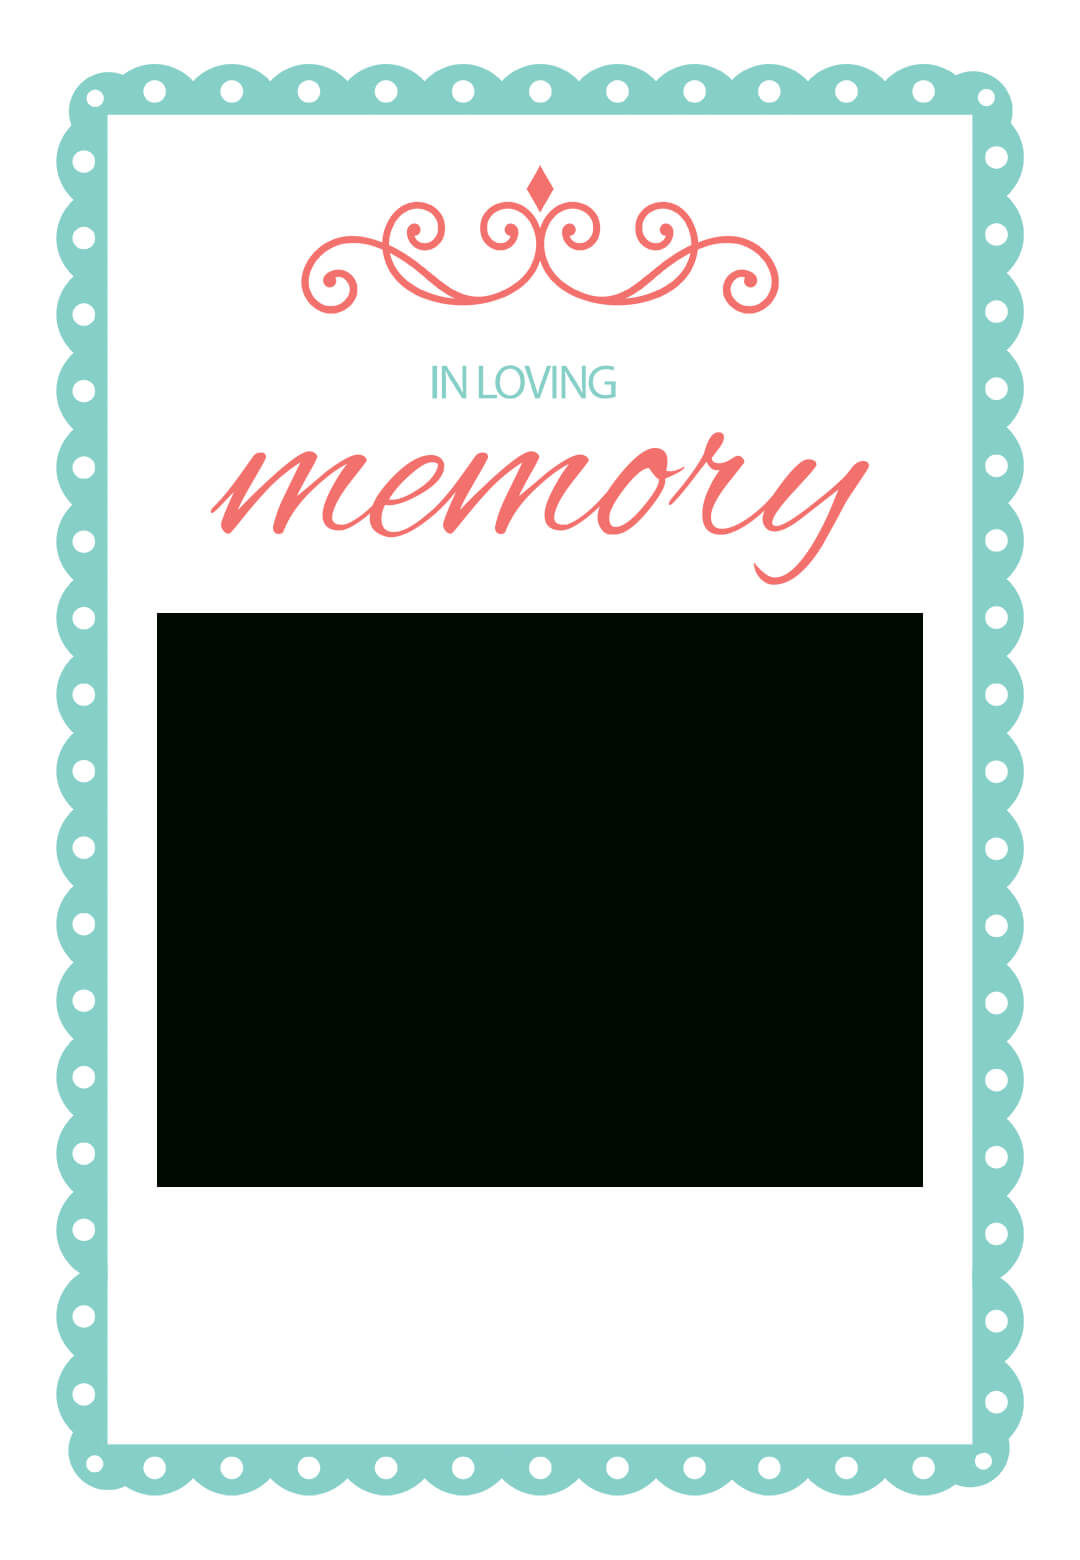 In Loving Memory - Free Memorial Card Template | Greetings In In Memory Cards Templates